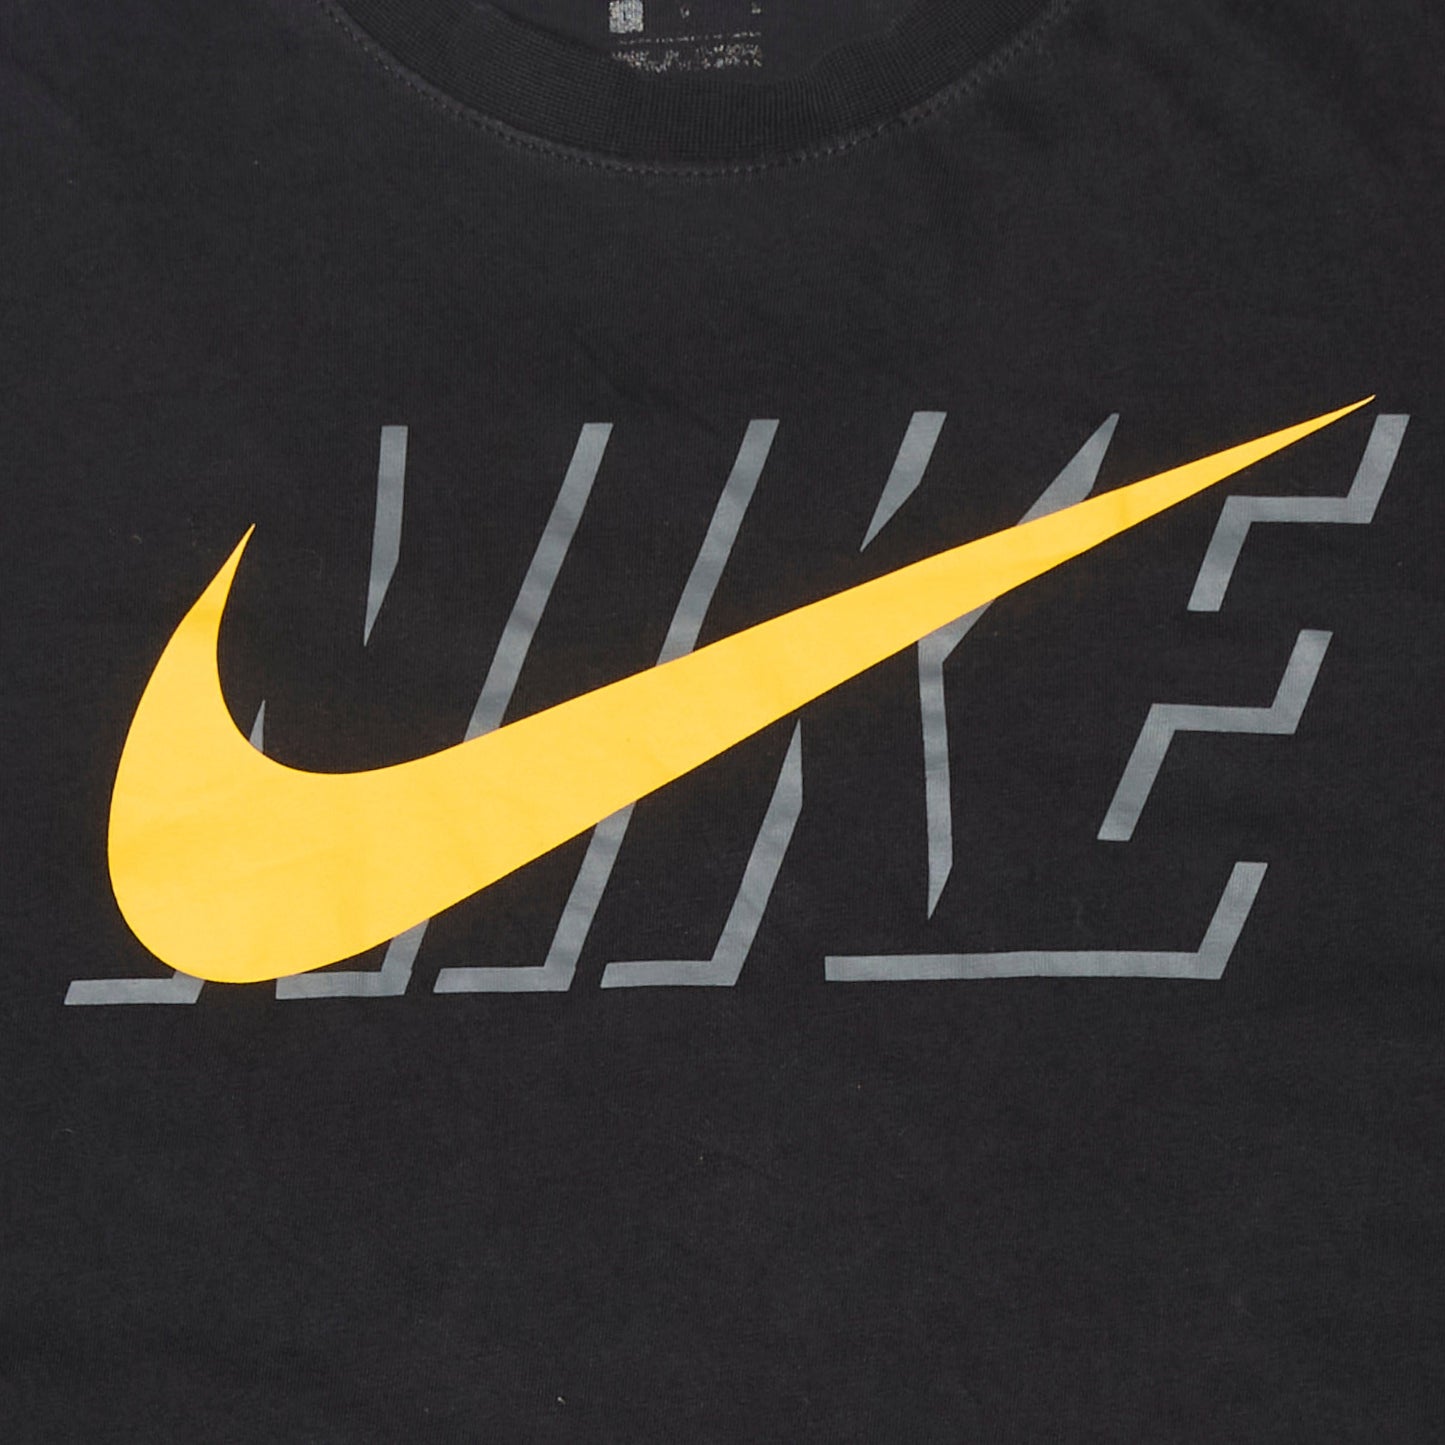 Nike T-shirt - L